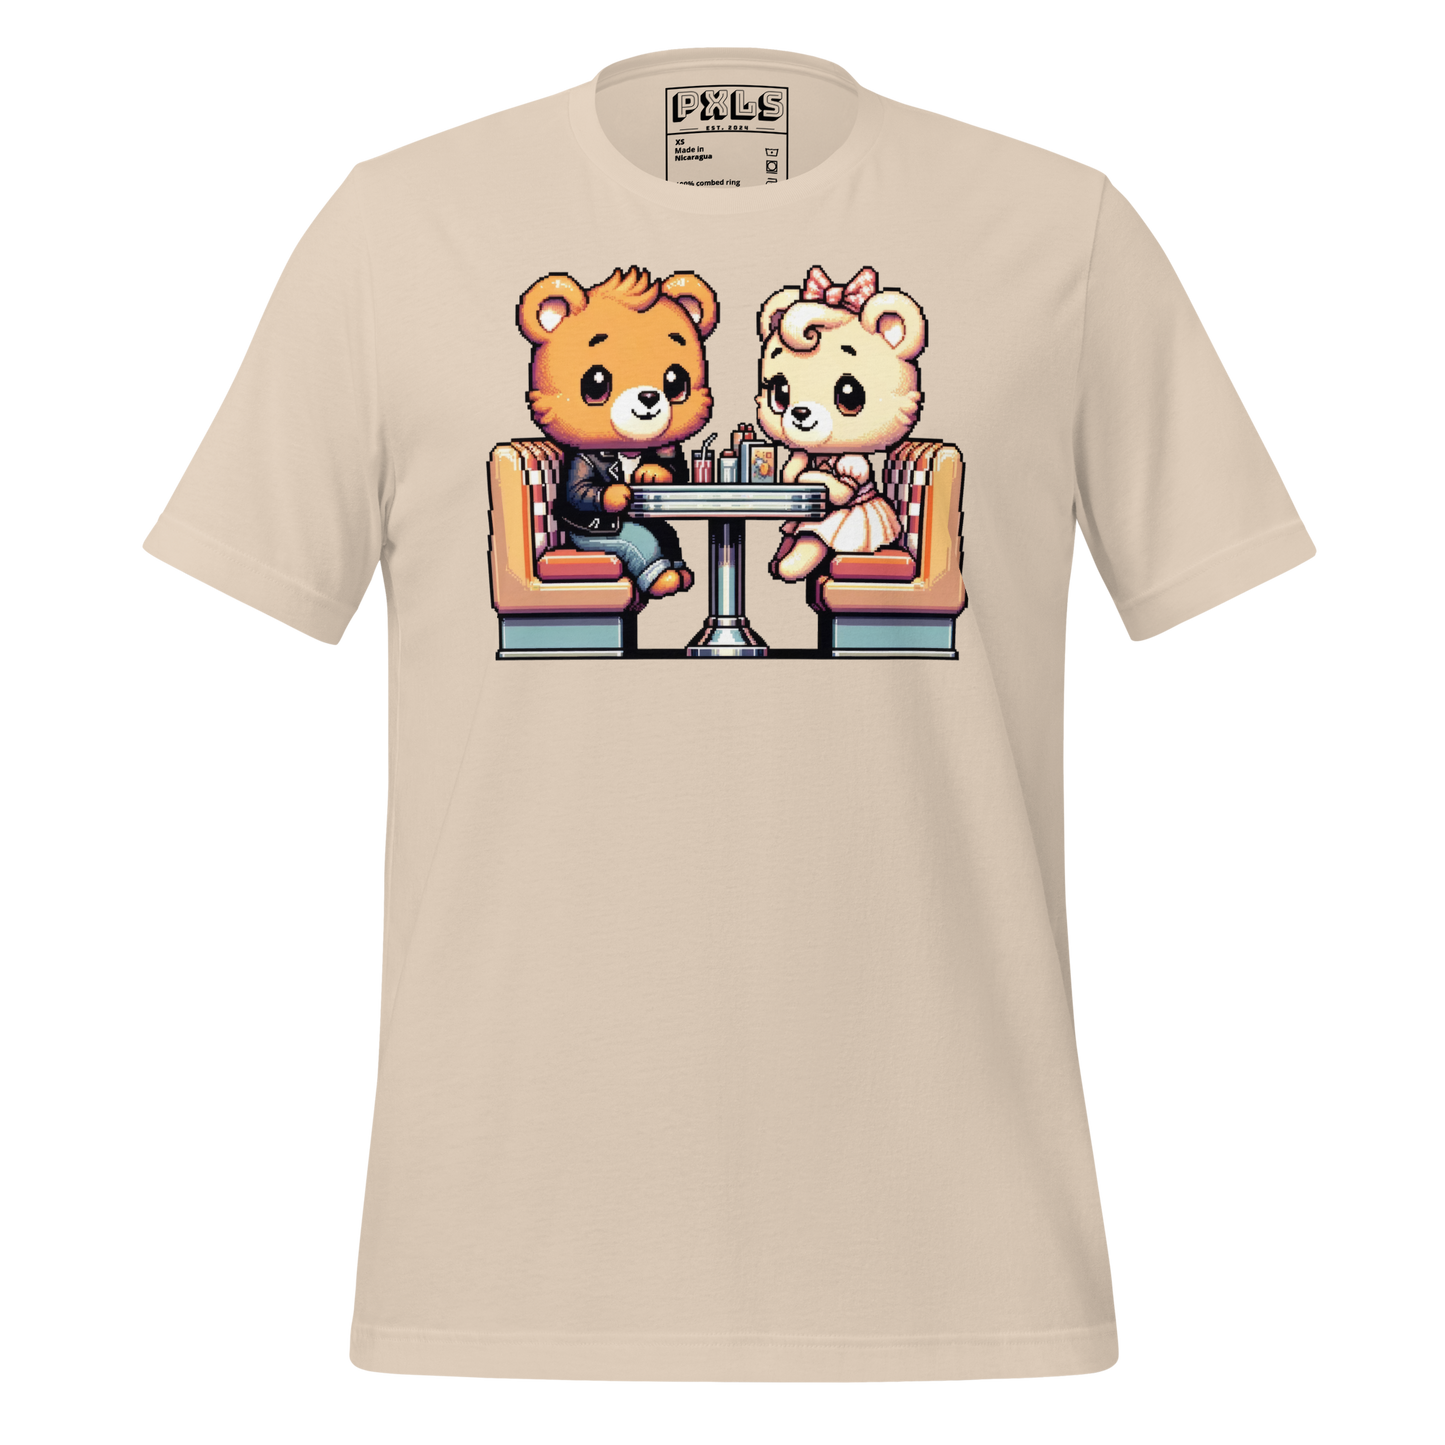 "Diner Bears" Unisex Shirt